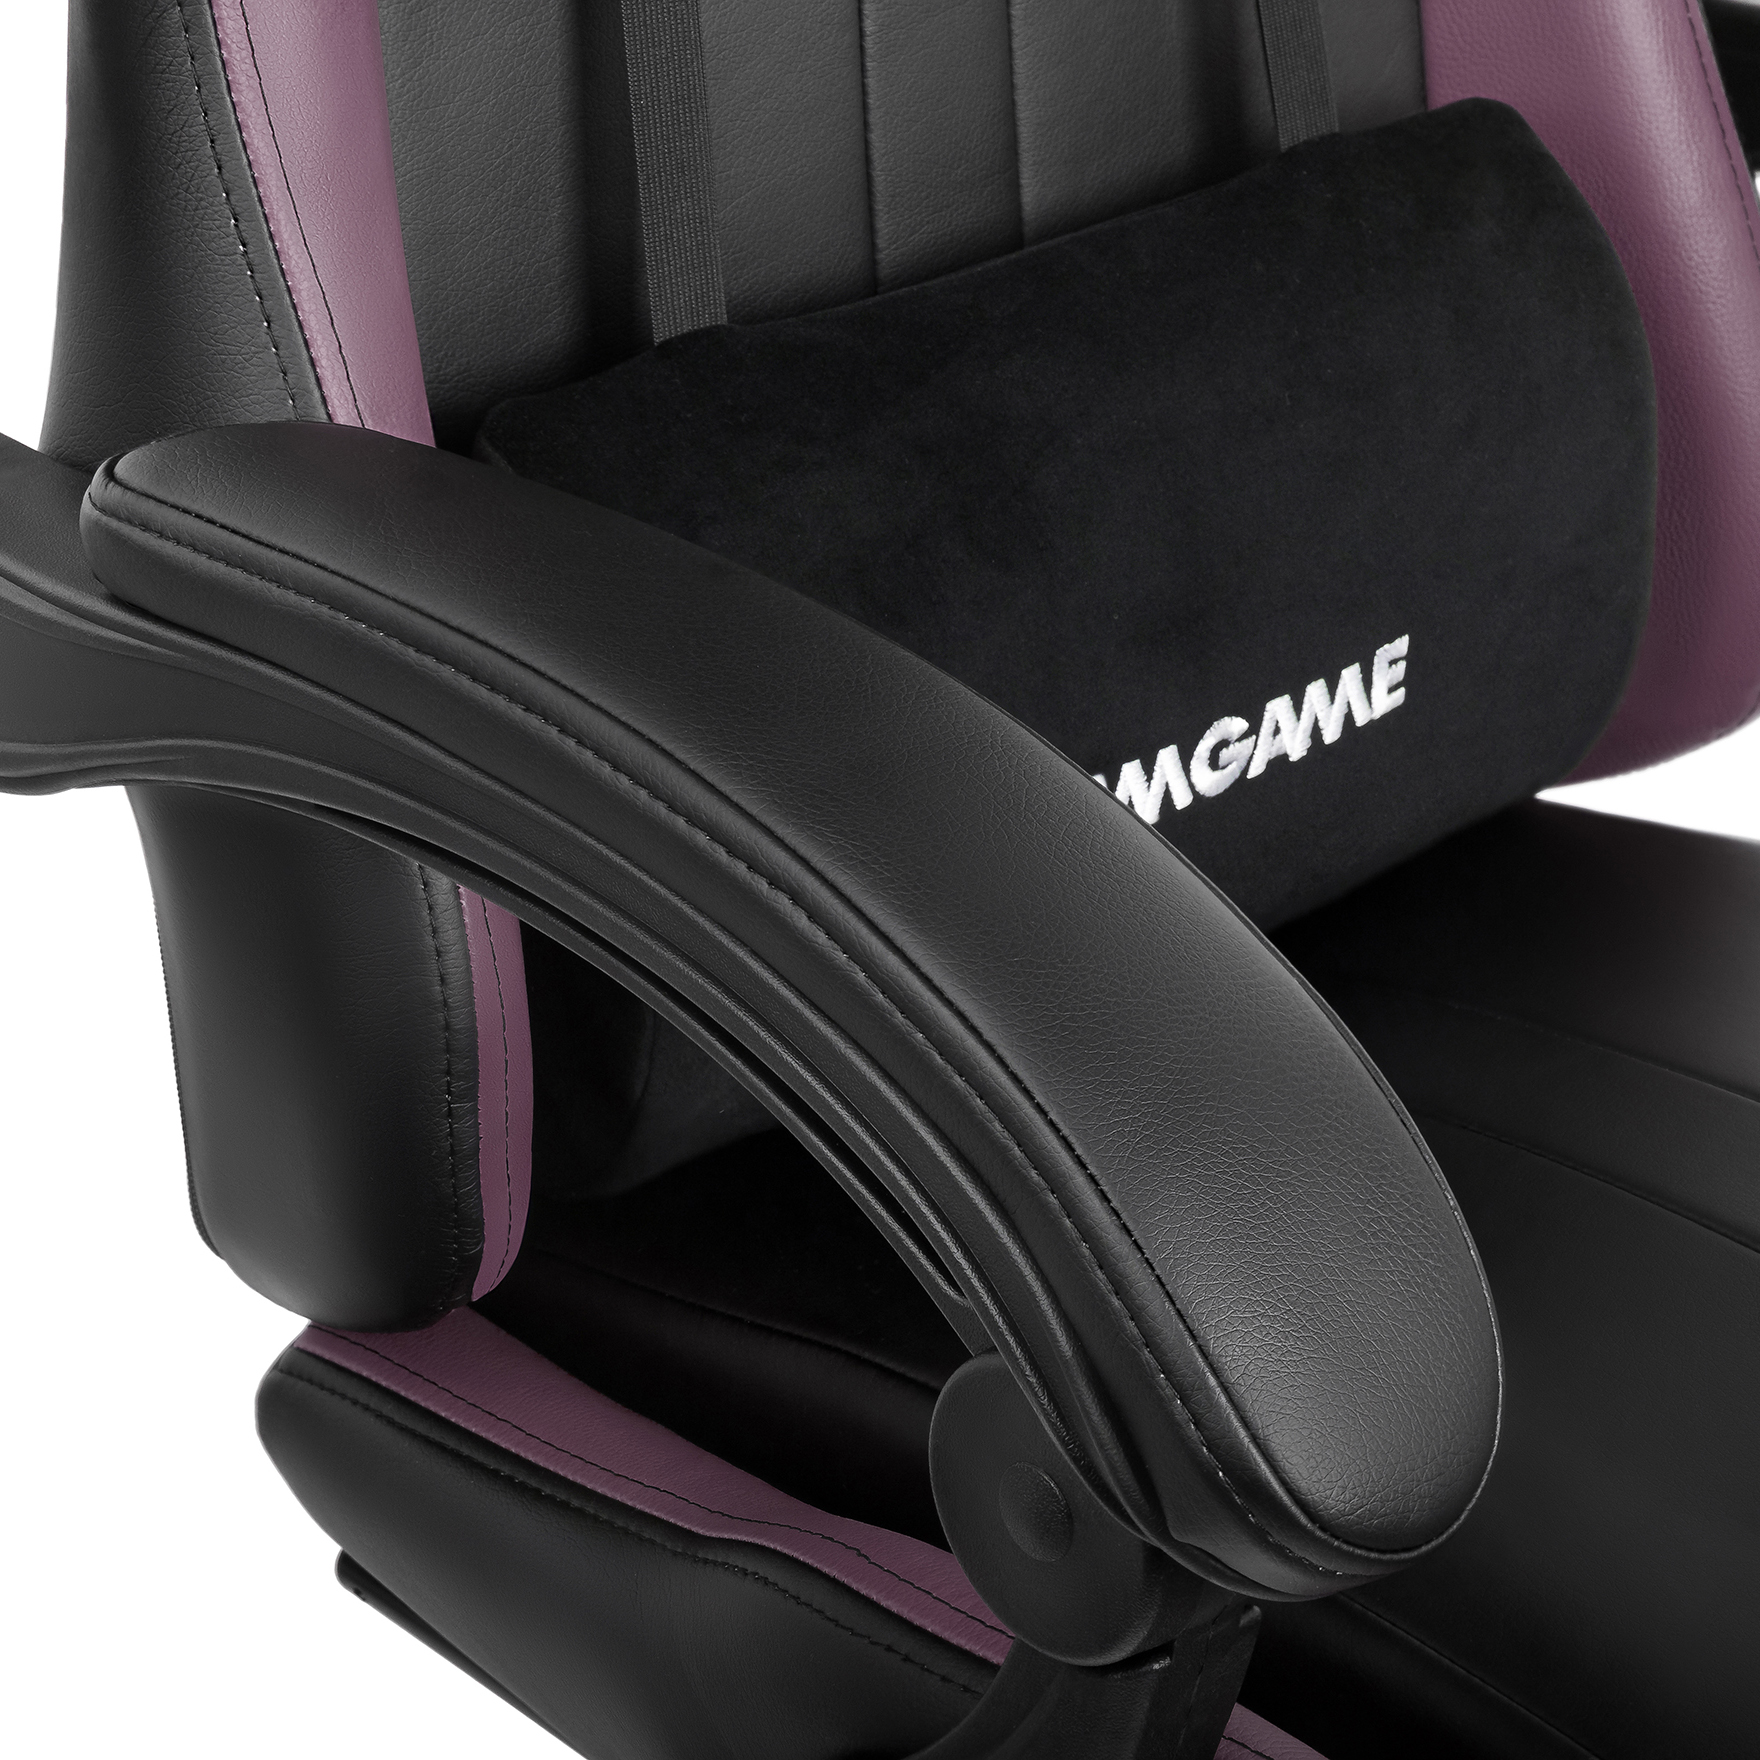 Игровое компьютерное кресло VMMGAME THRONE ежевично-пурпурный - фото 10